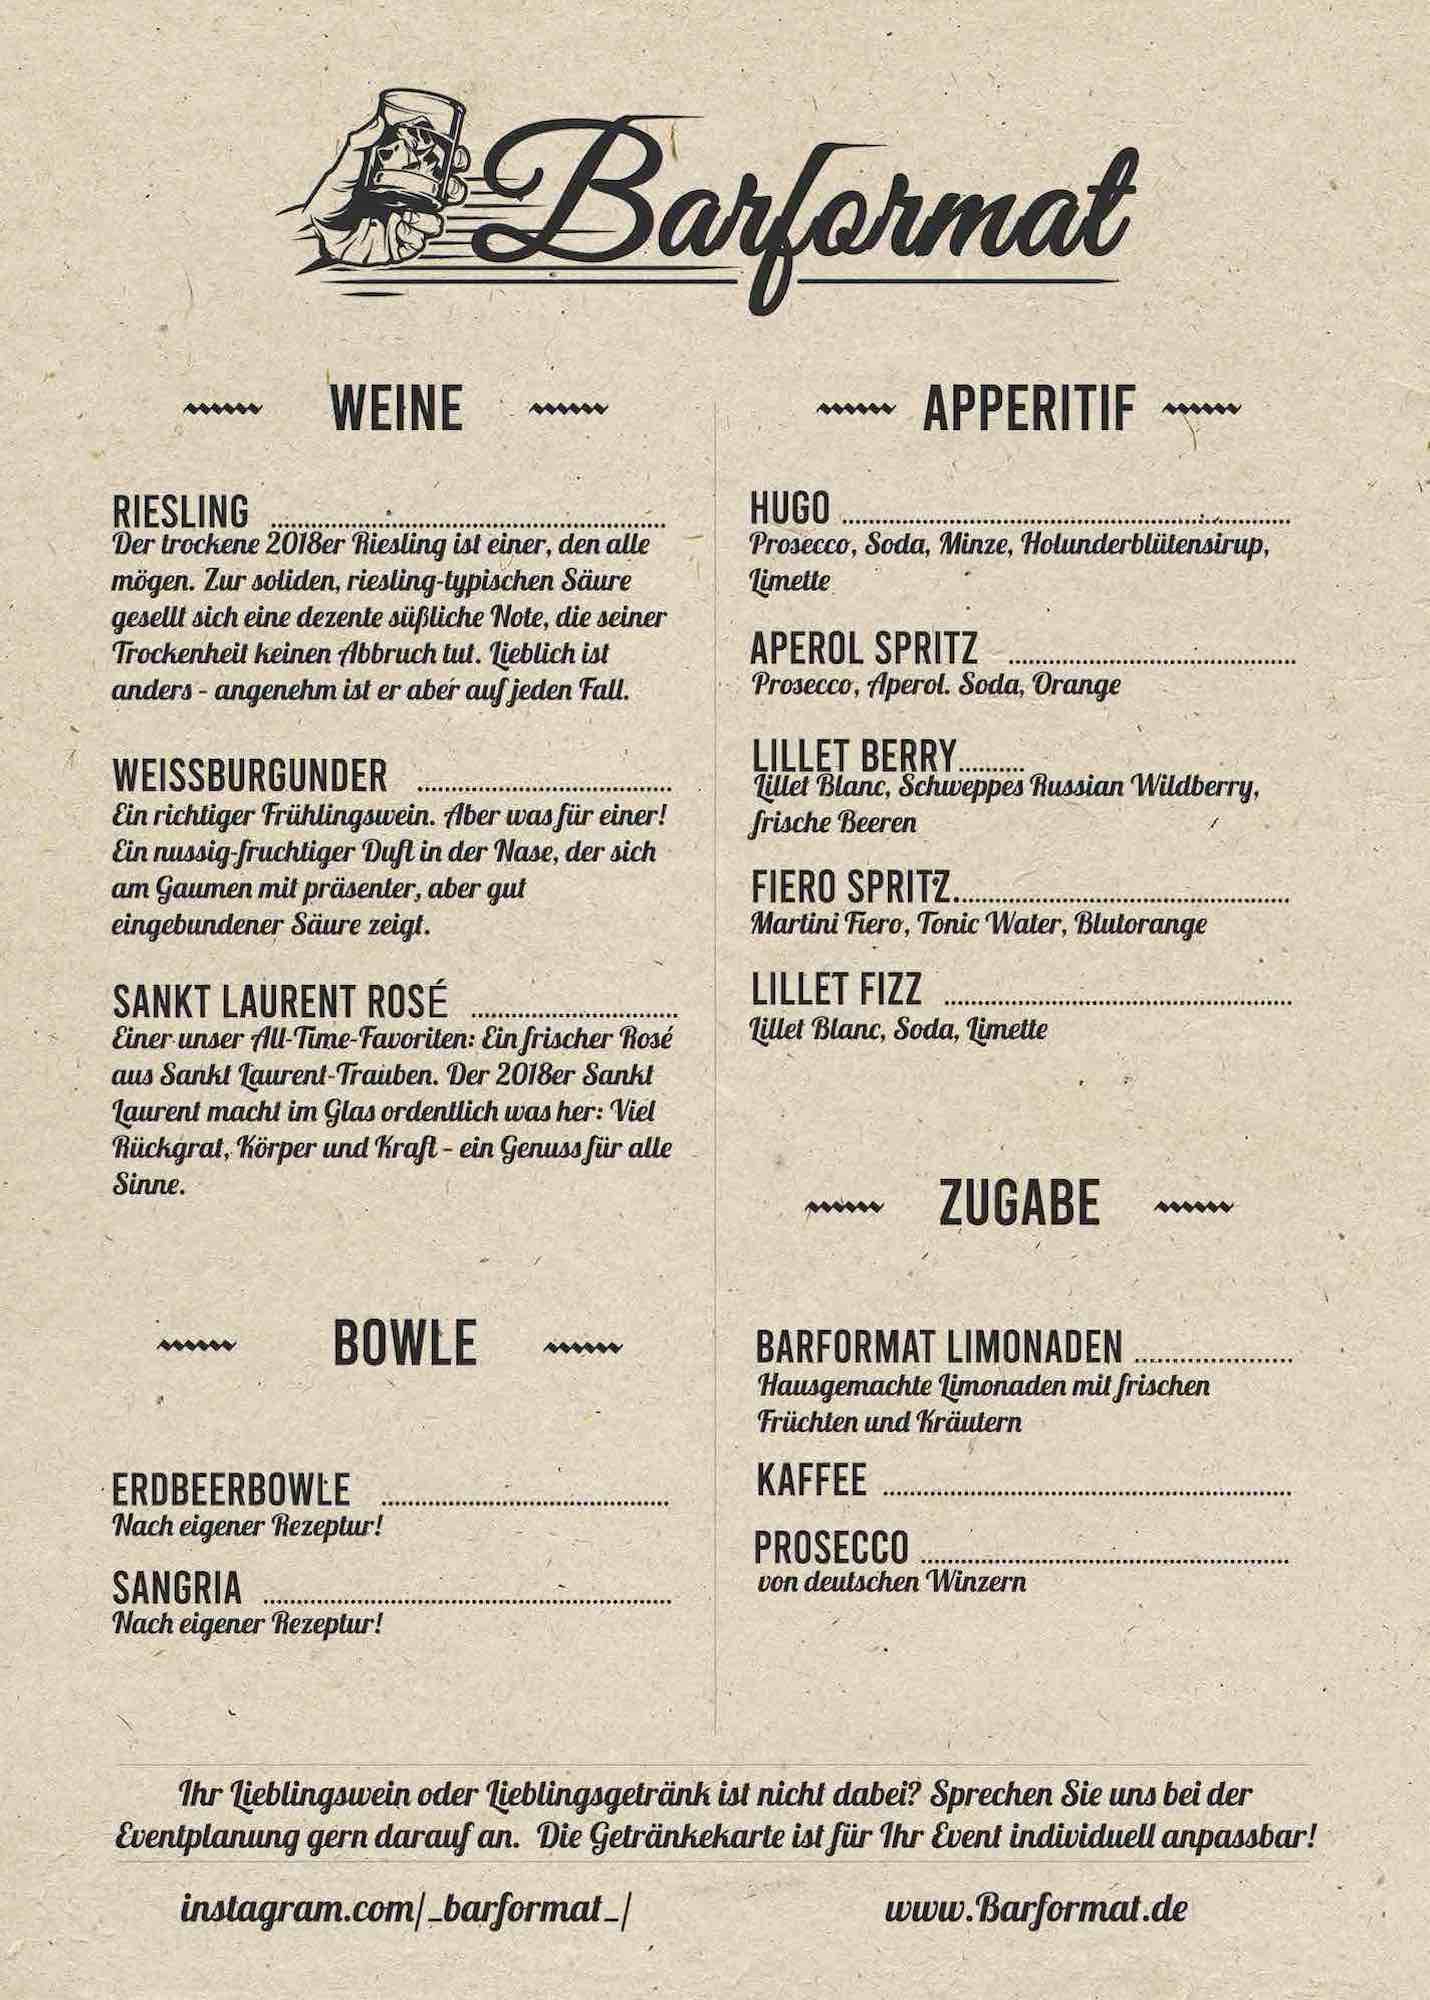 Barformat Hannover - Mobile Bar | Catering | Team | Gastronomie | Messe | Firmenevent | Cocktails | Buchen | Mieten | Anfragen | Hannover | Hameln | Bremen | Braunschweig